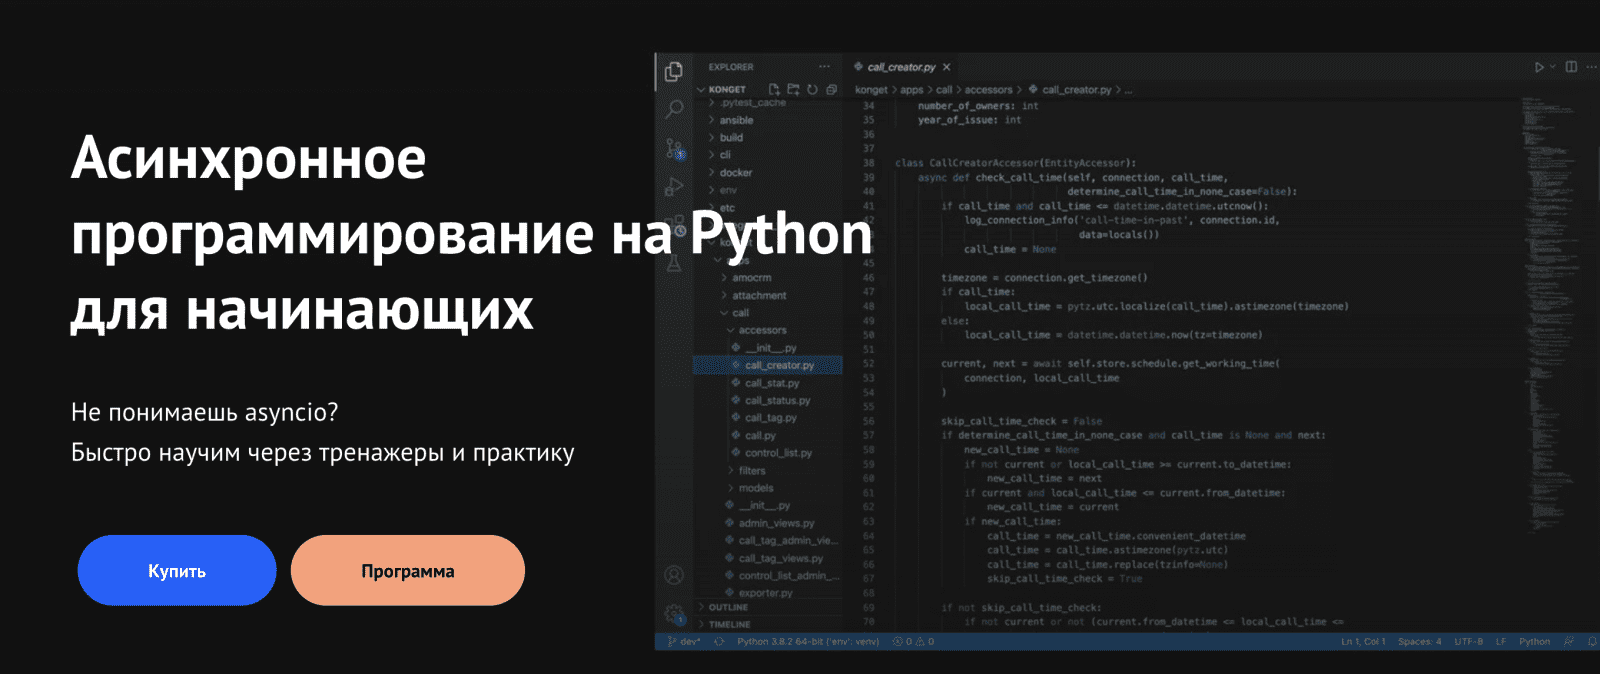 Изображение [kts] Александр Опрышко - Асинхронное программирование на Python для начинающих (2021) в посте 254753